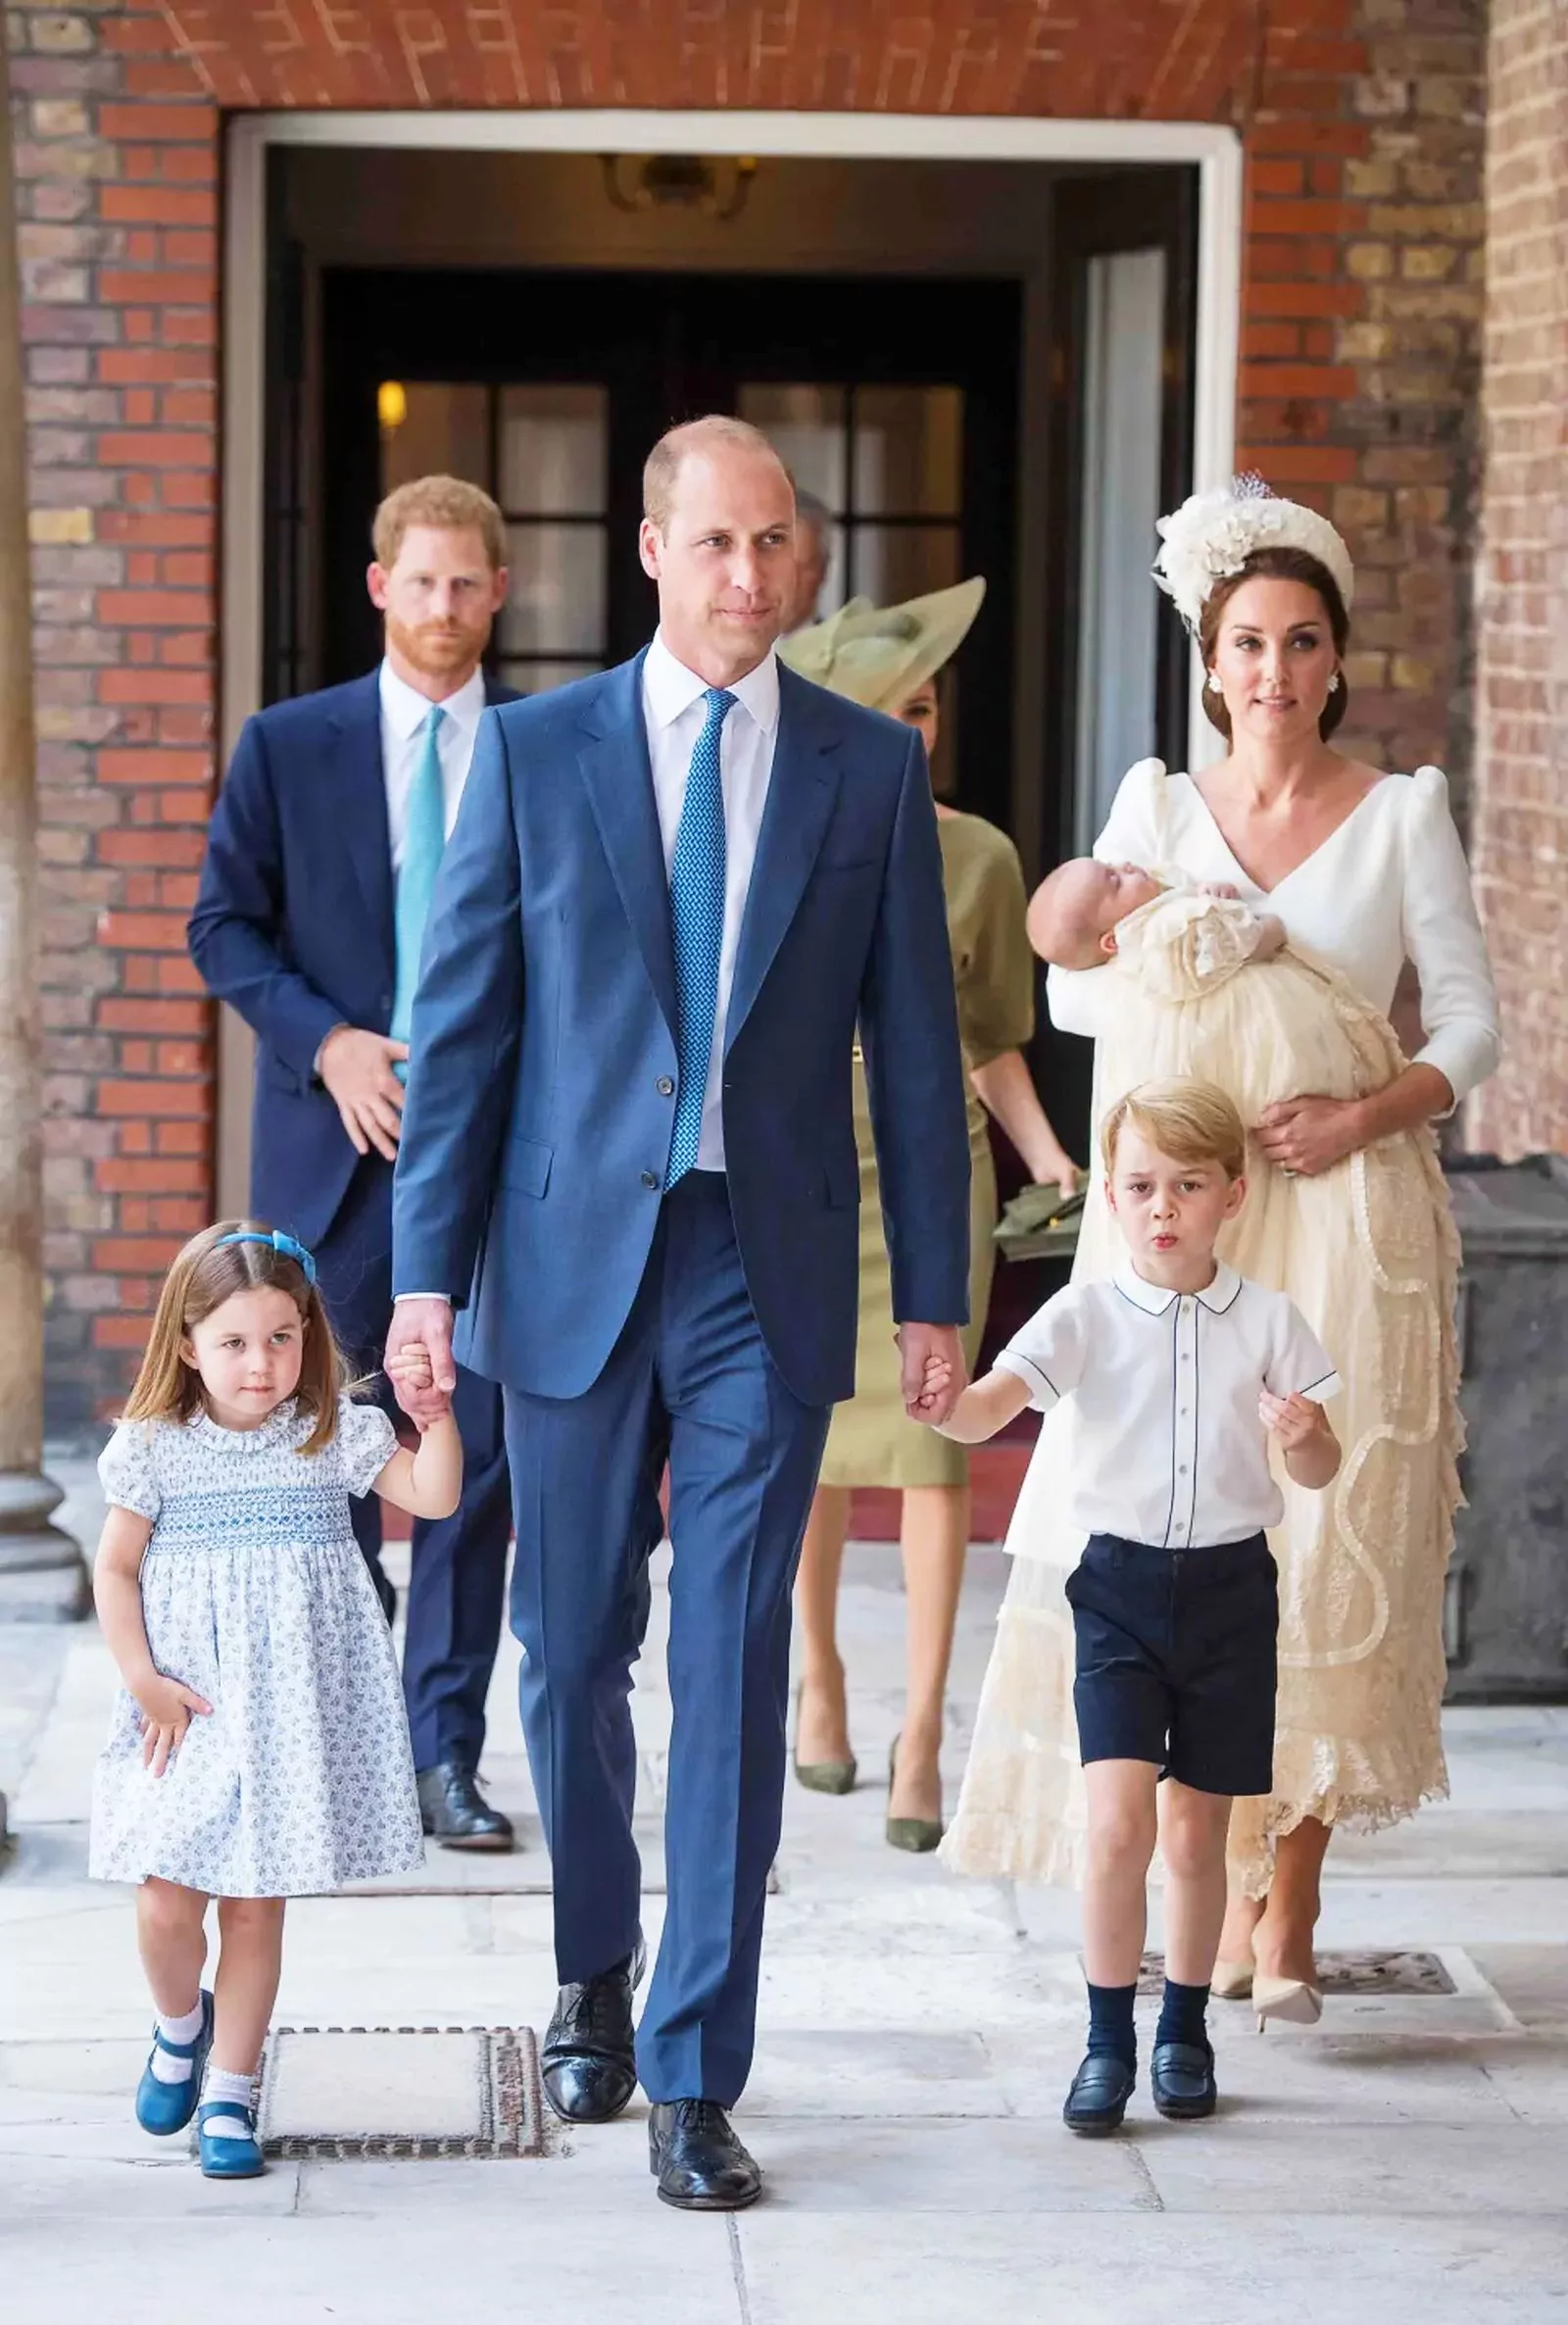 Принц Джордж с семьей прибыли на крещение принца Луи в королевской часовне дворца Сент-Джеймс, 9 июля 2018 г.